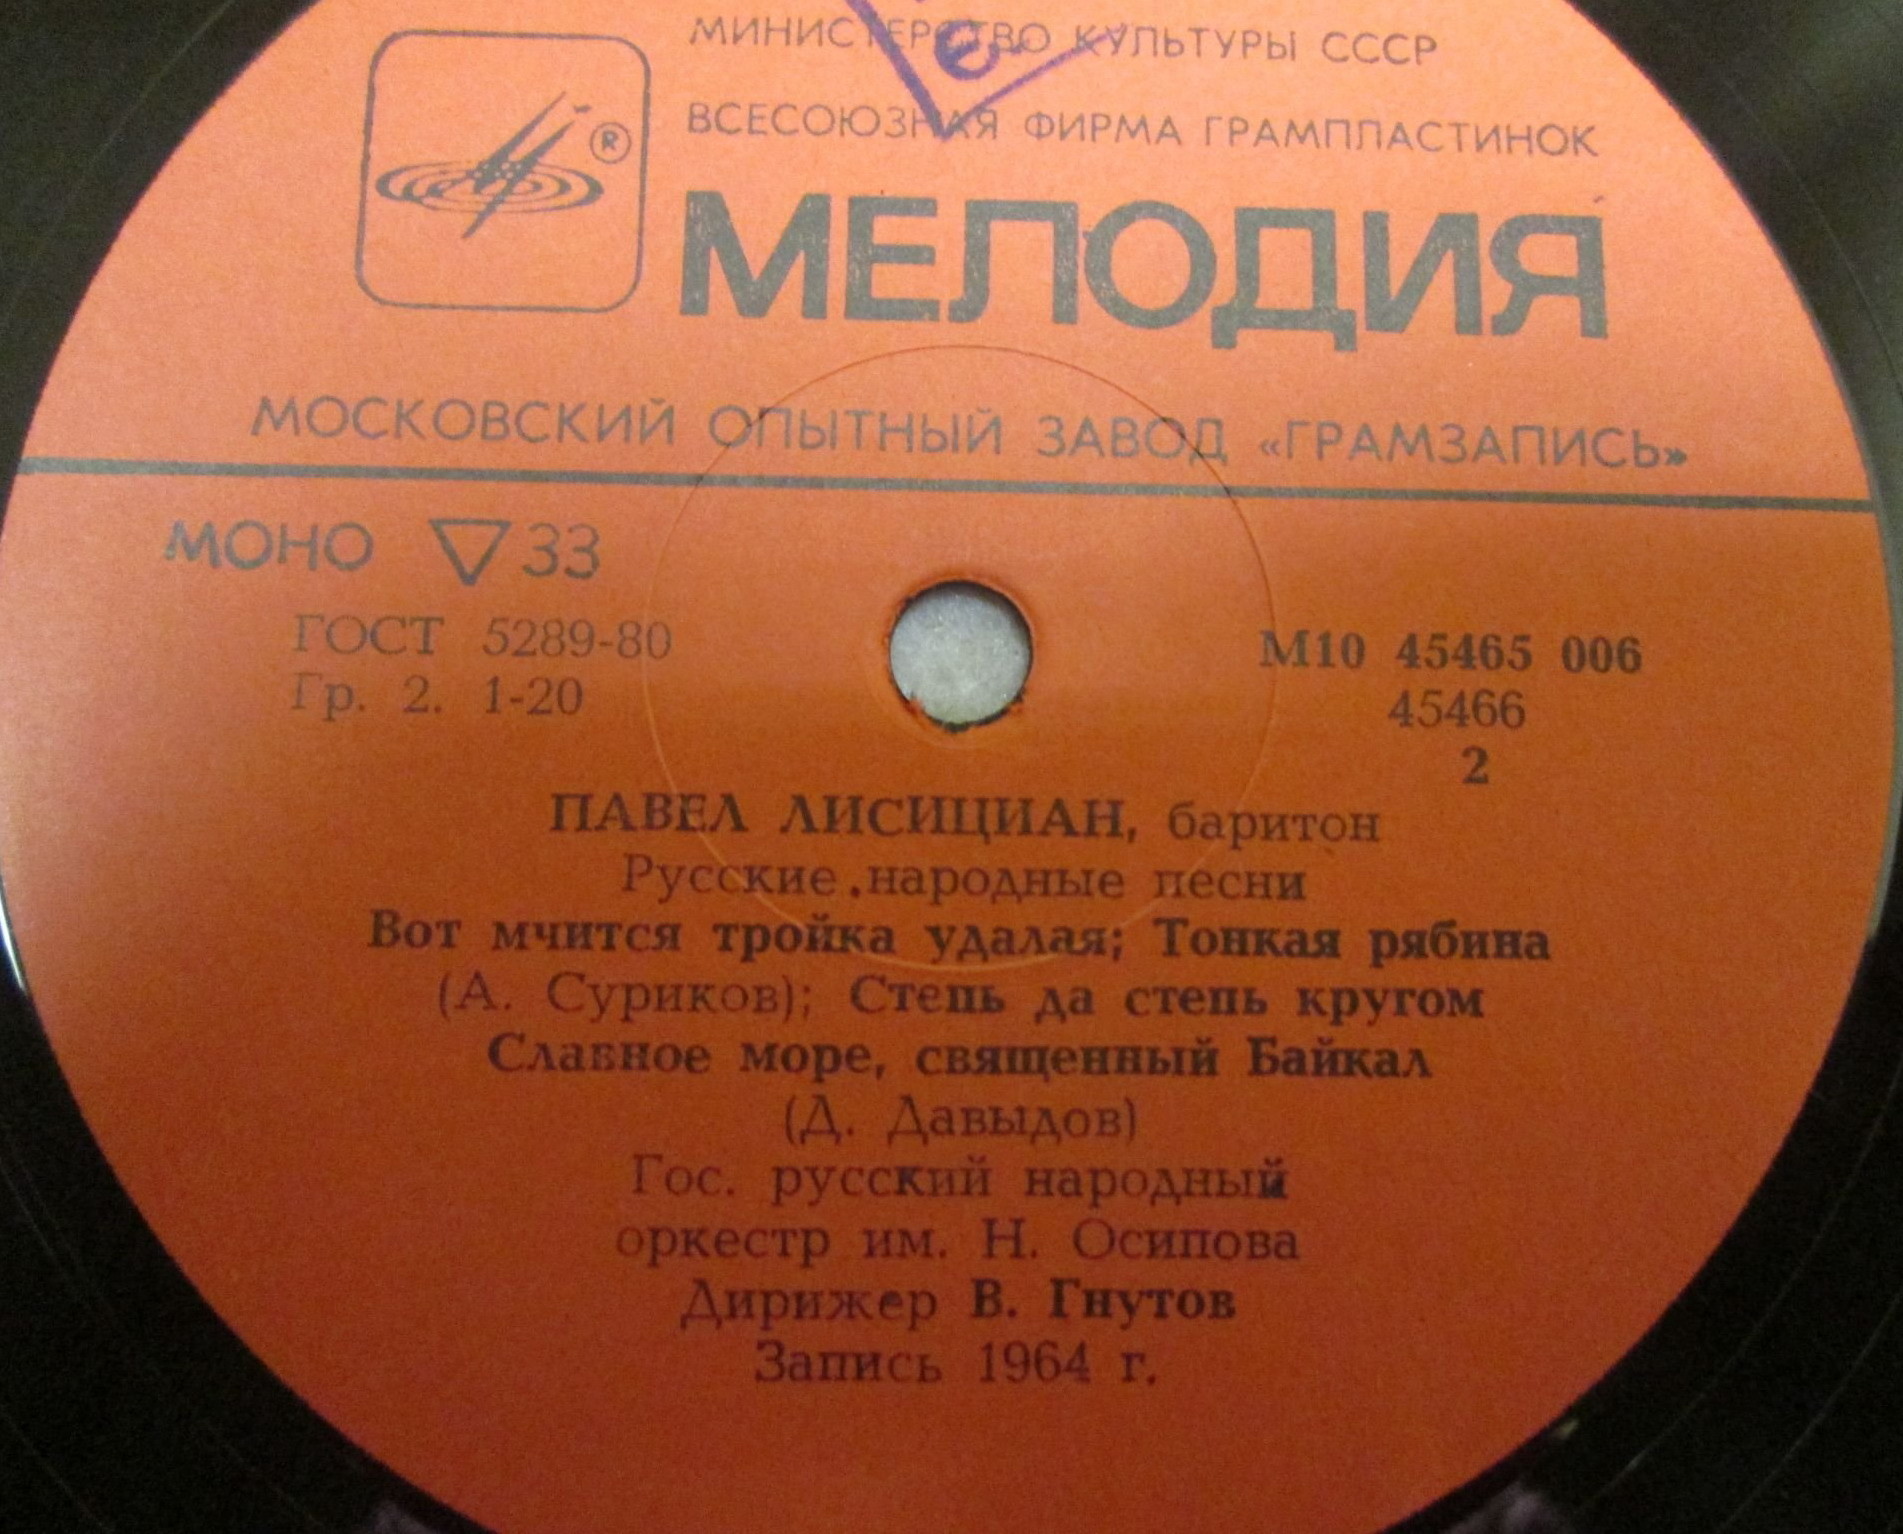 Павел Лисициан (баритон). Русские и армянские песни